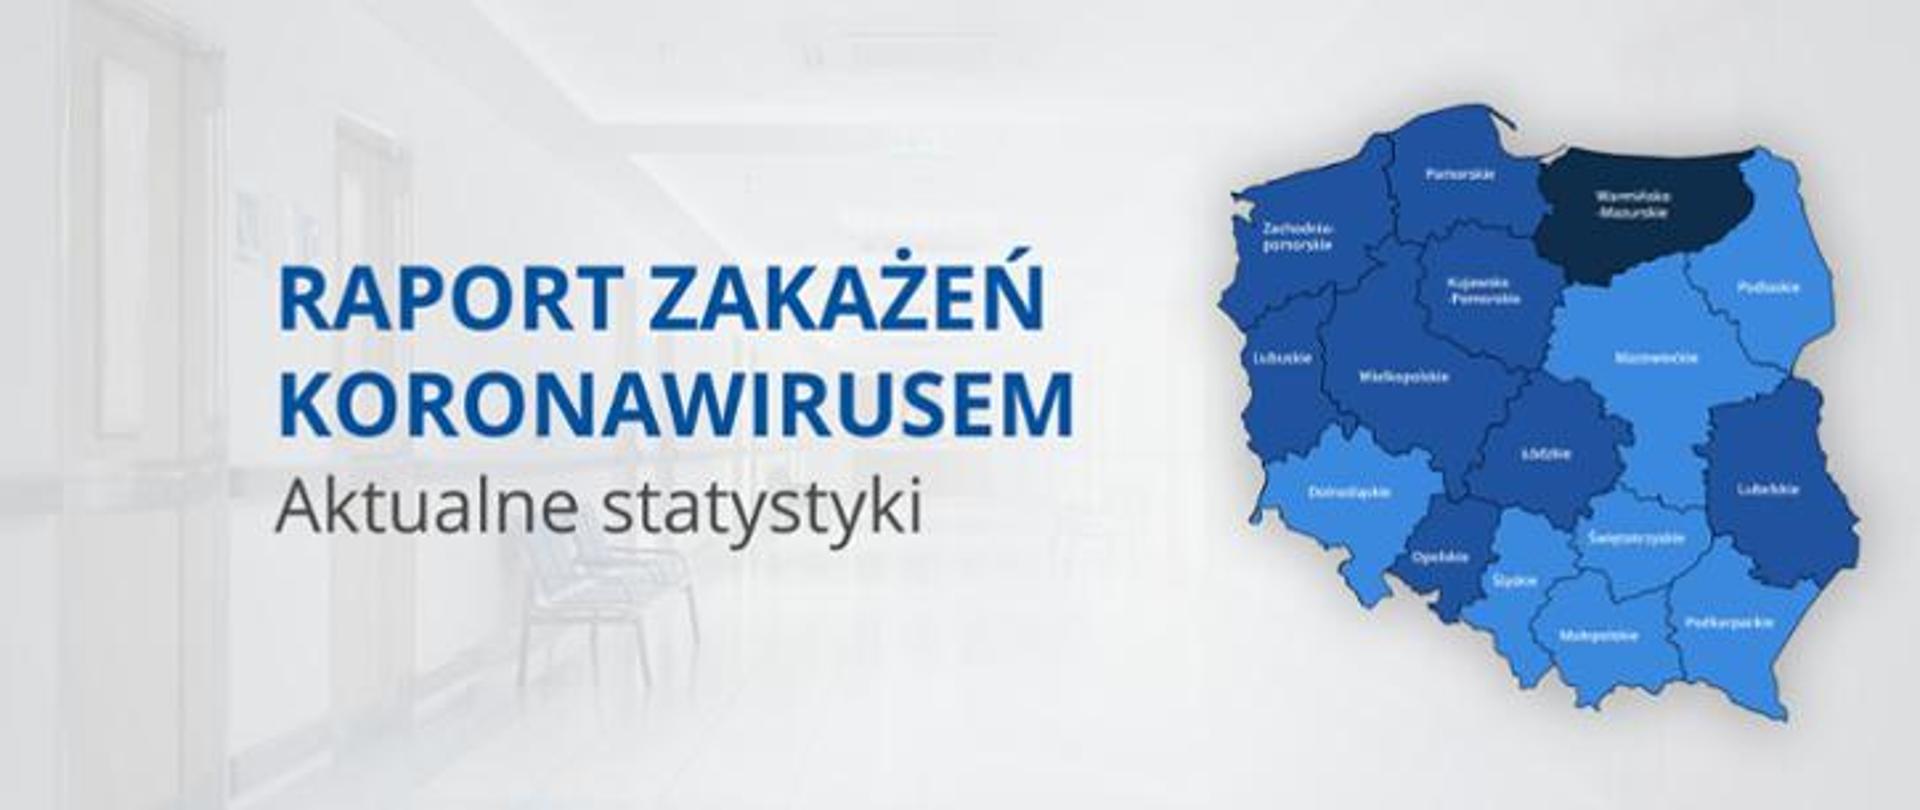 Zdjęcie przedstawia mapę Polski z podziałem na województwa